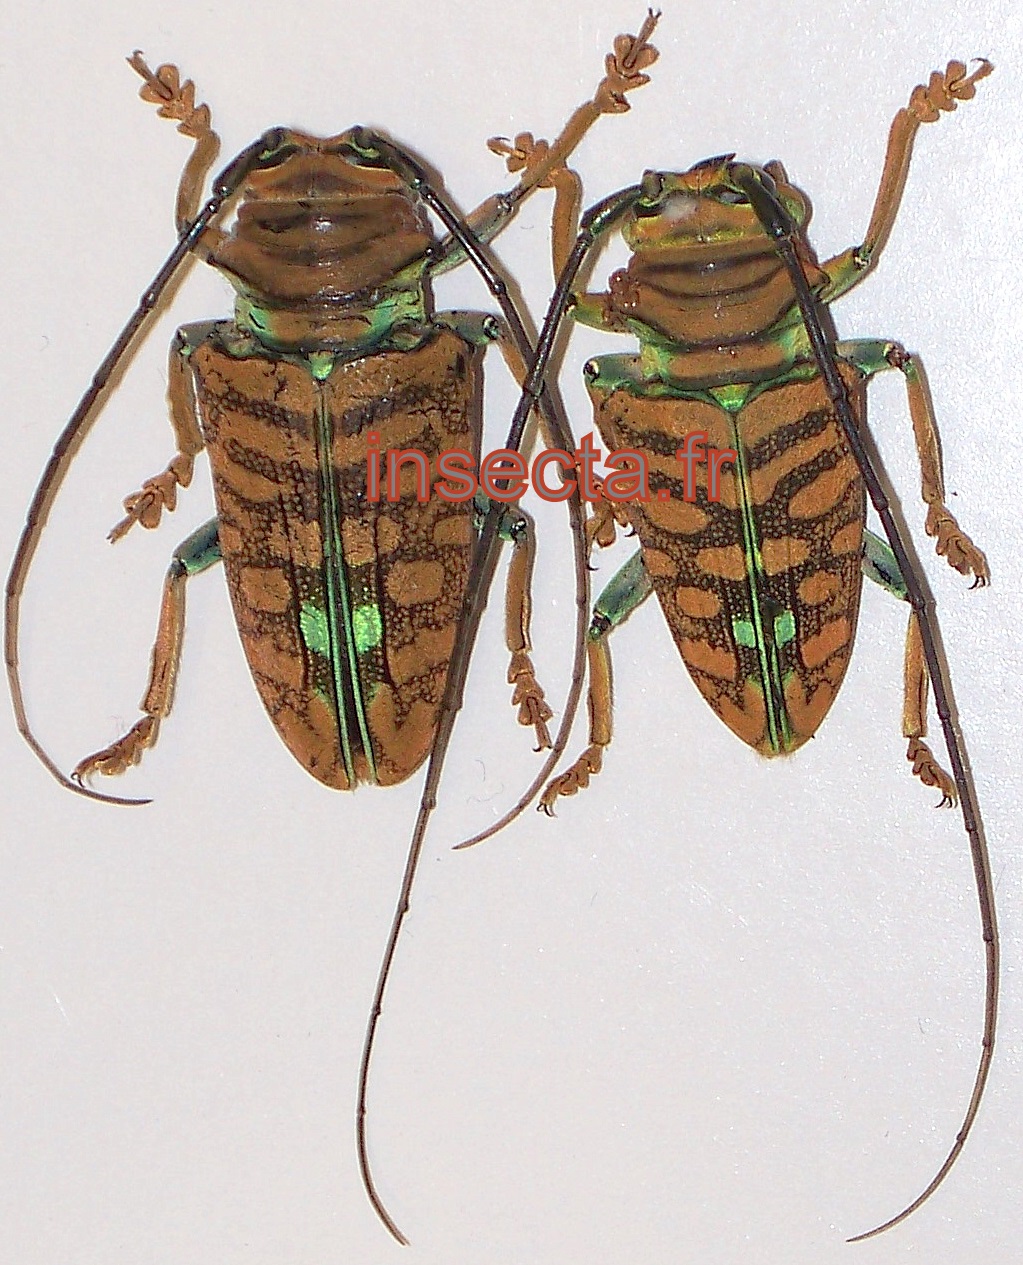 Sternotomis amabilis submaculata pair